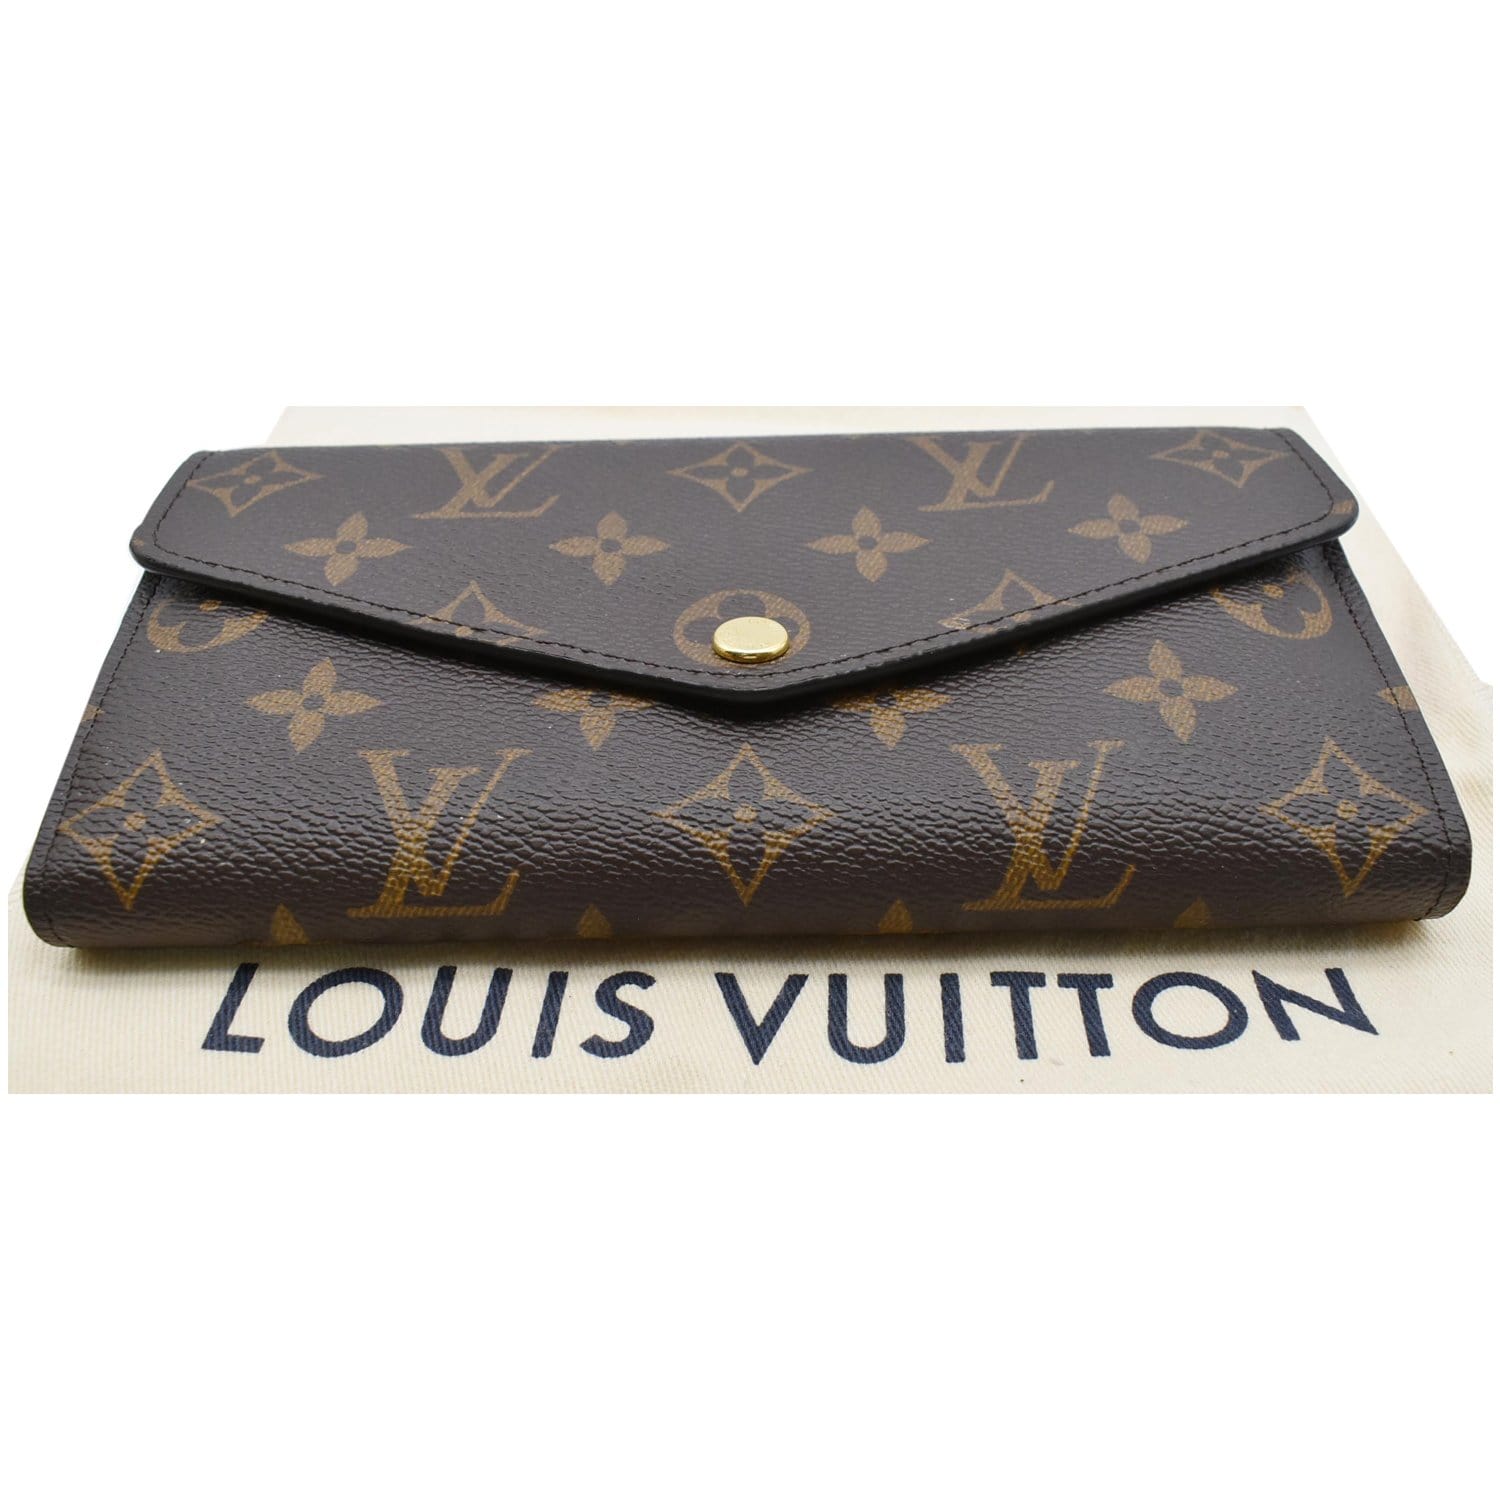 Louis Vuitton Monogram Canvas Sarah Wallet (Authentic Pre-Owned) - ShopStyle